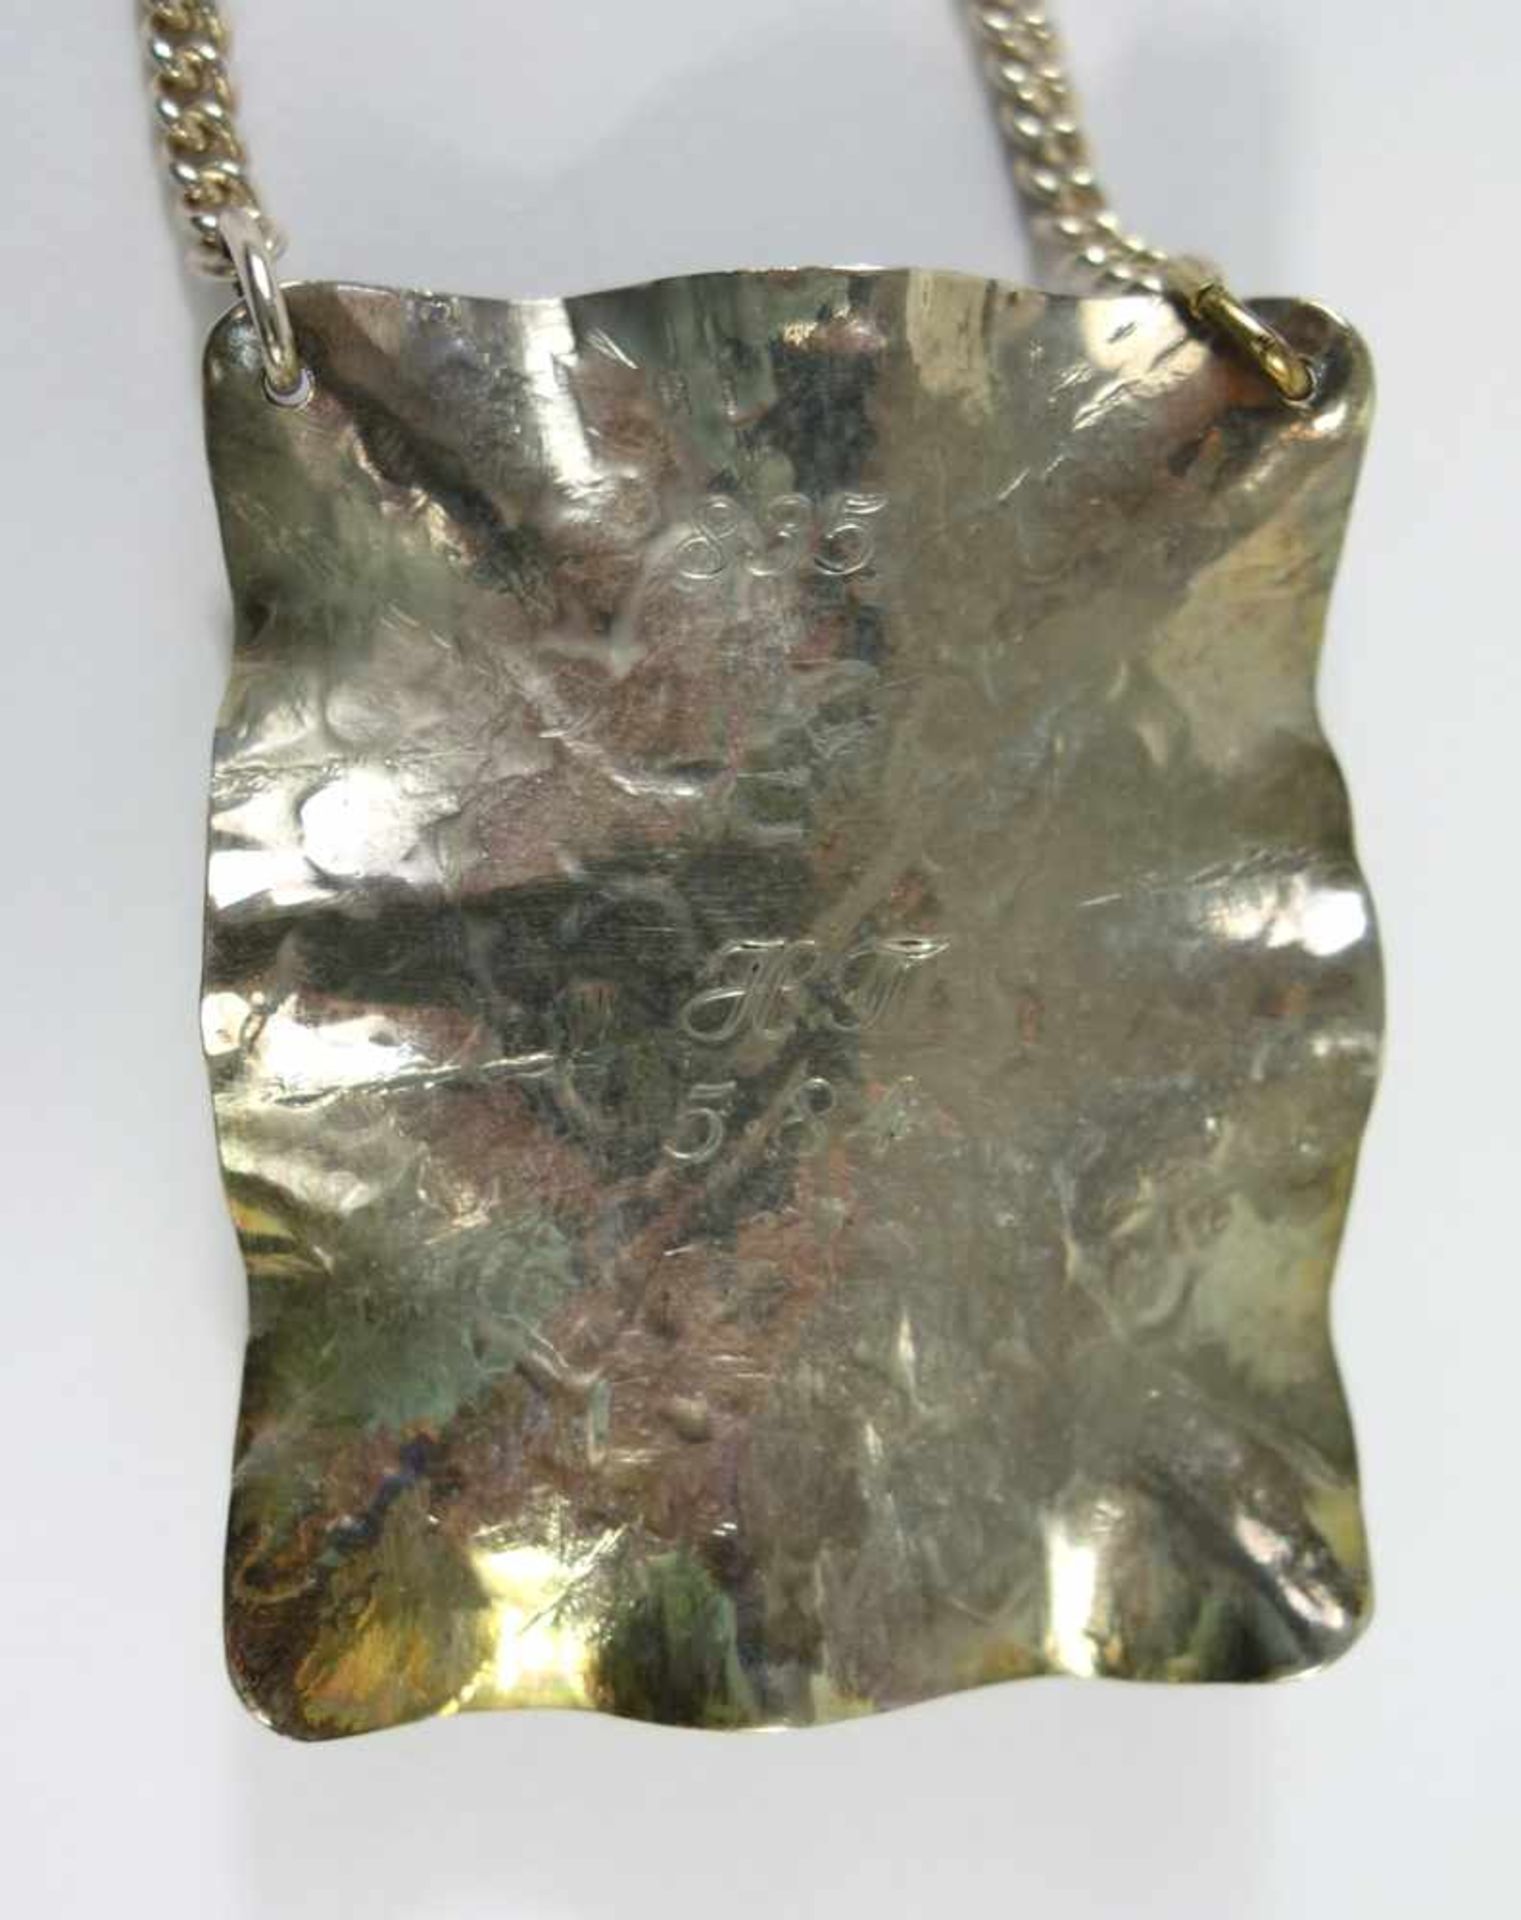 Collier mit Tigerauge, Paar Blusenknöpfe und Brosche, 835er Silber, Gesamt-Gew.65,71g, - Bild 2 aus 2